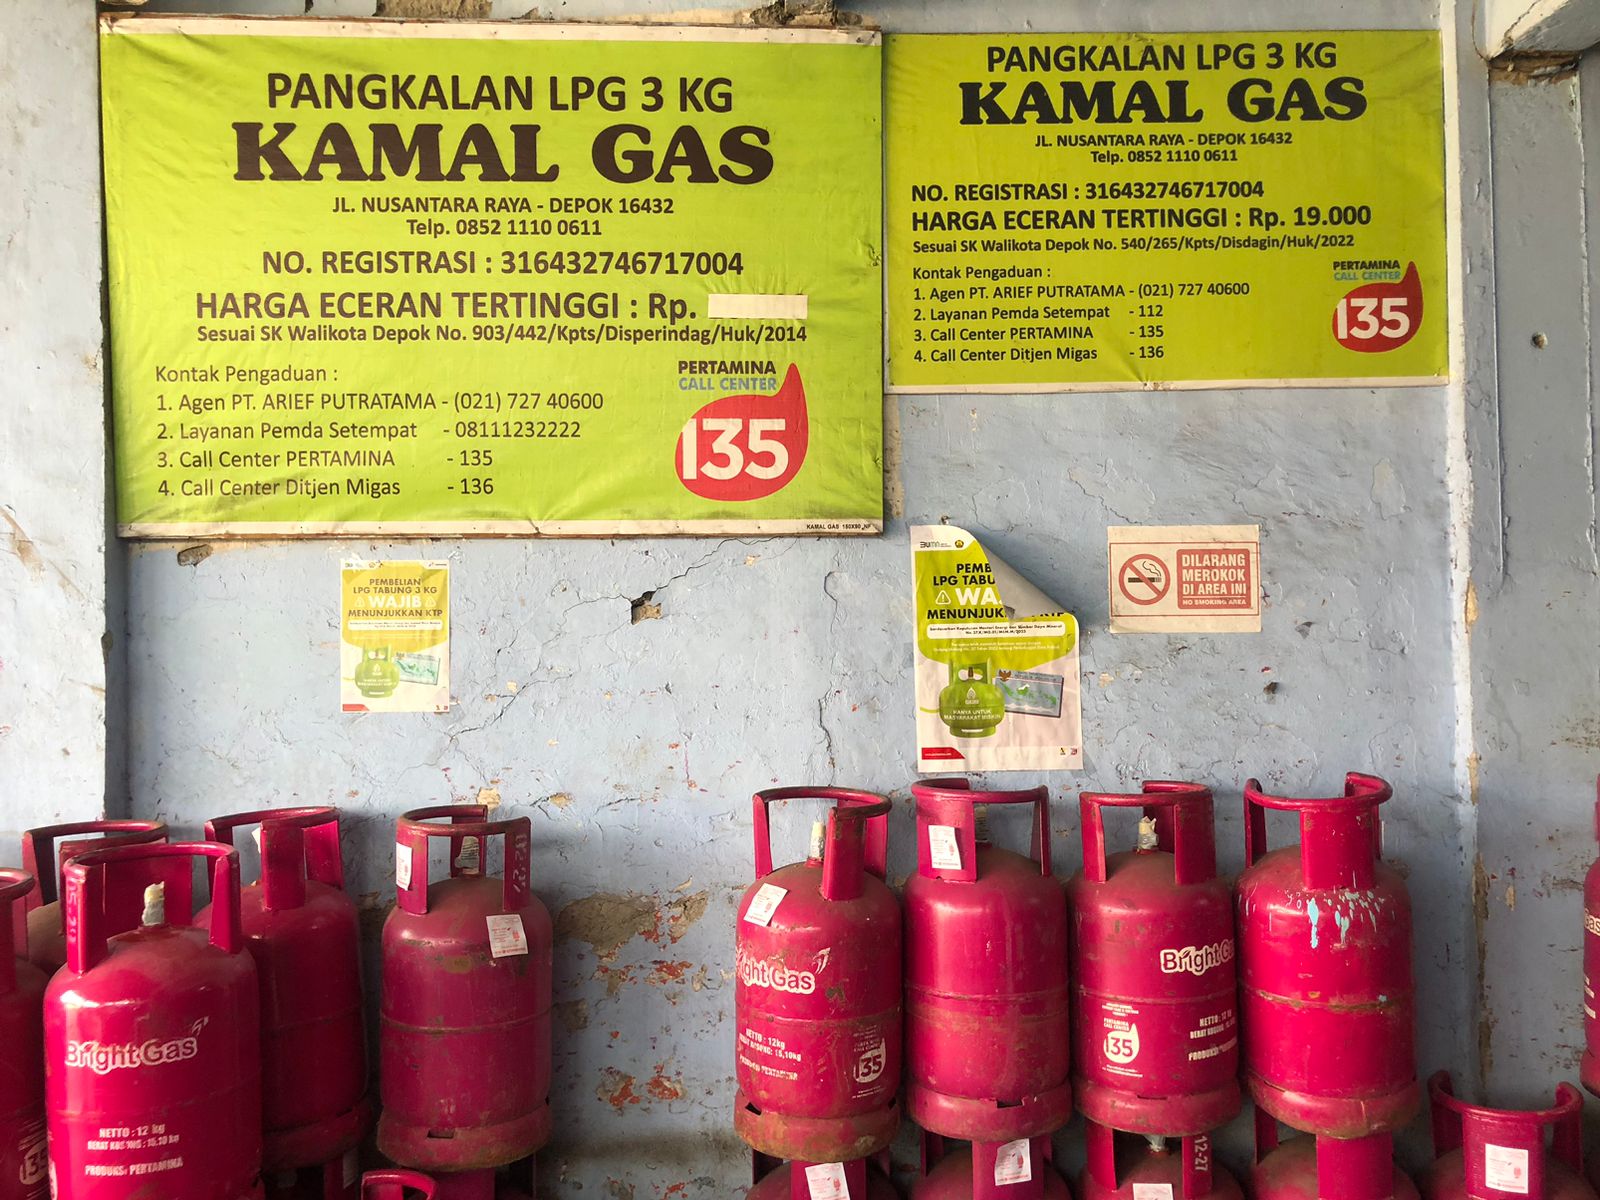 Pangkalan LPG 3 Kg Go Digital Mulai 1 Juni, Pertamina Siap 100%